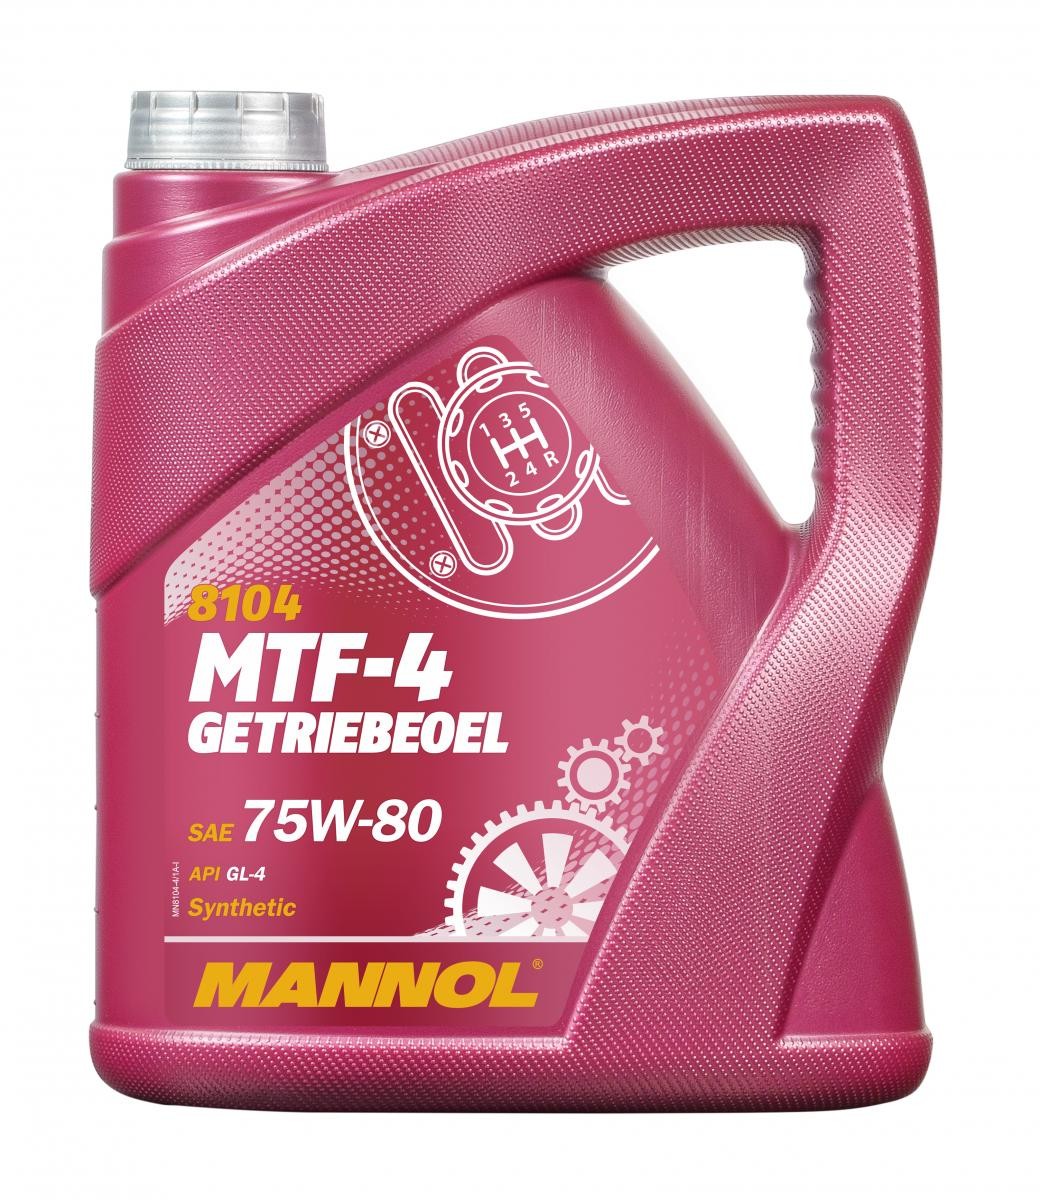 MANNOL MTF-4 Getroebeoel MN8104-4 Transmission fluid 75W-80, Capacity: 4l